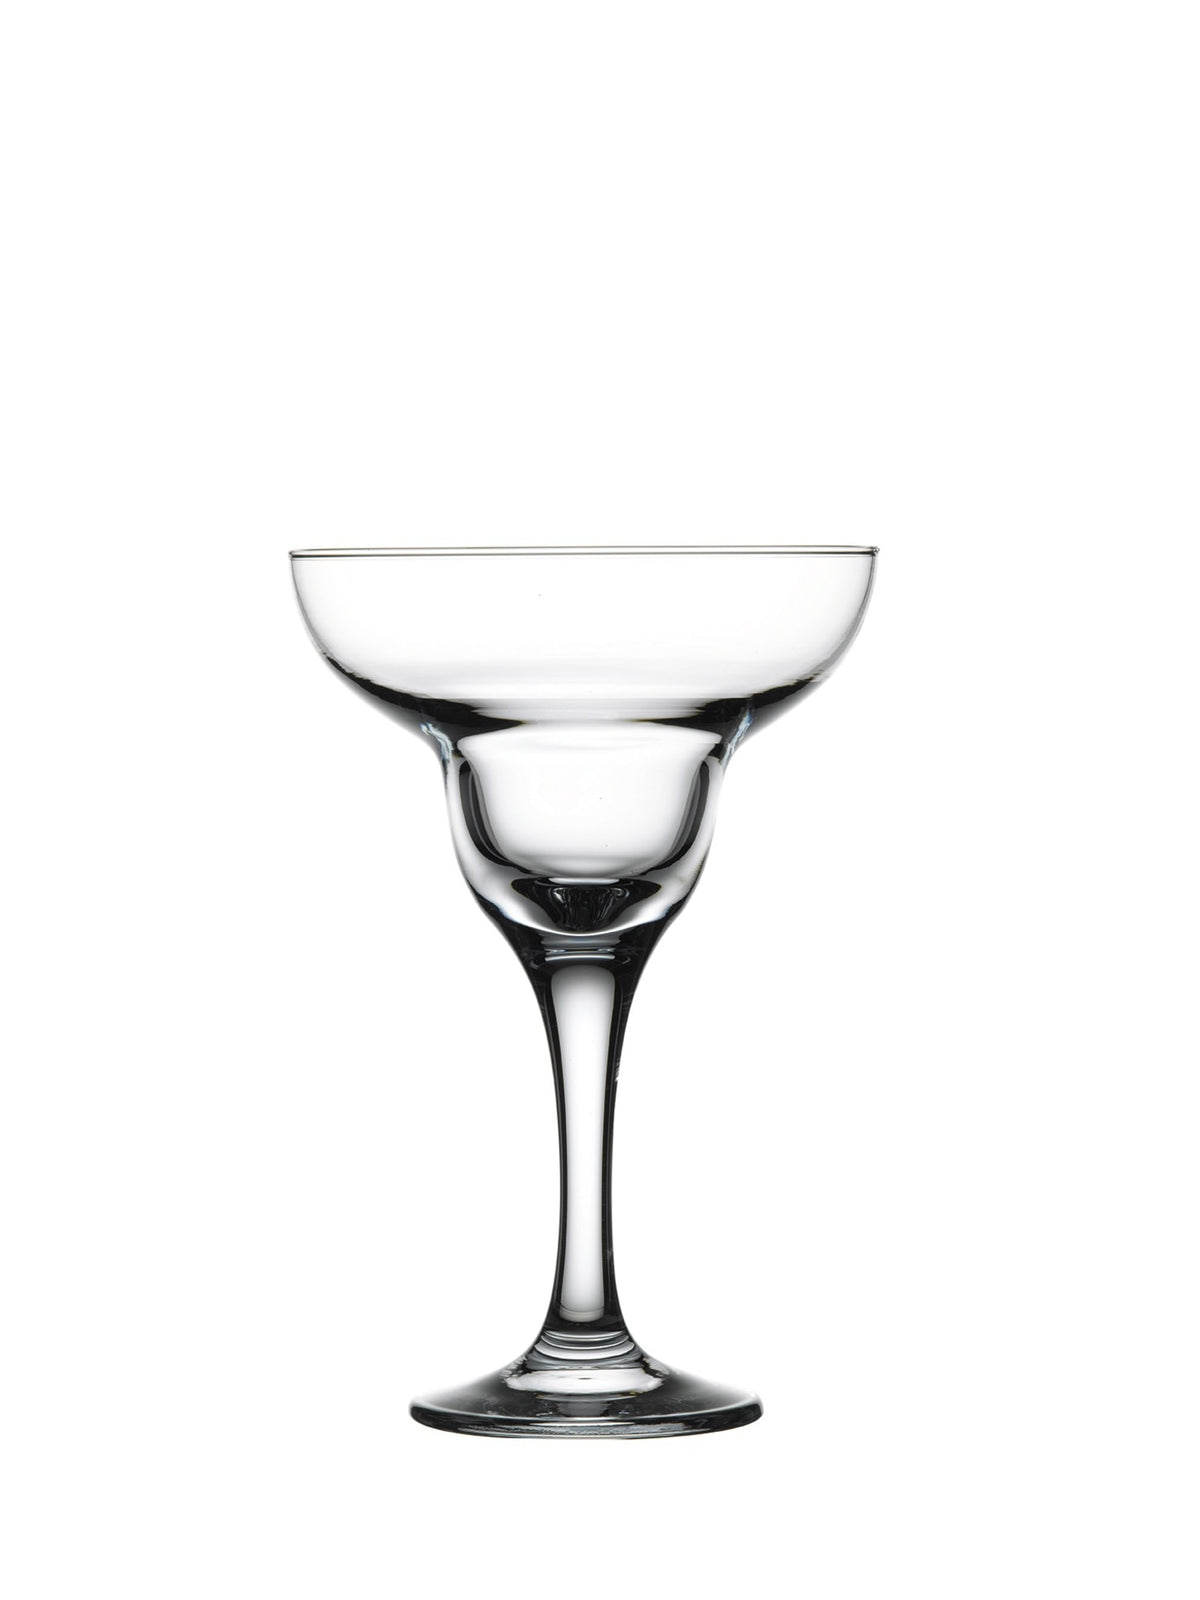 Et elegant Capri Margarita glas med en kapacitet på 30,5 cl - ideelt til enhver margarita-entusiast.